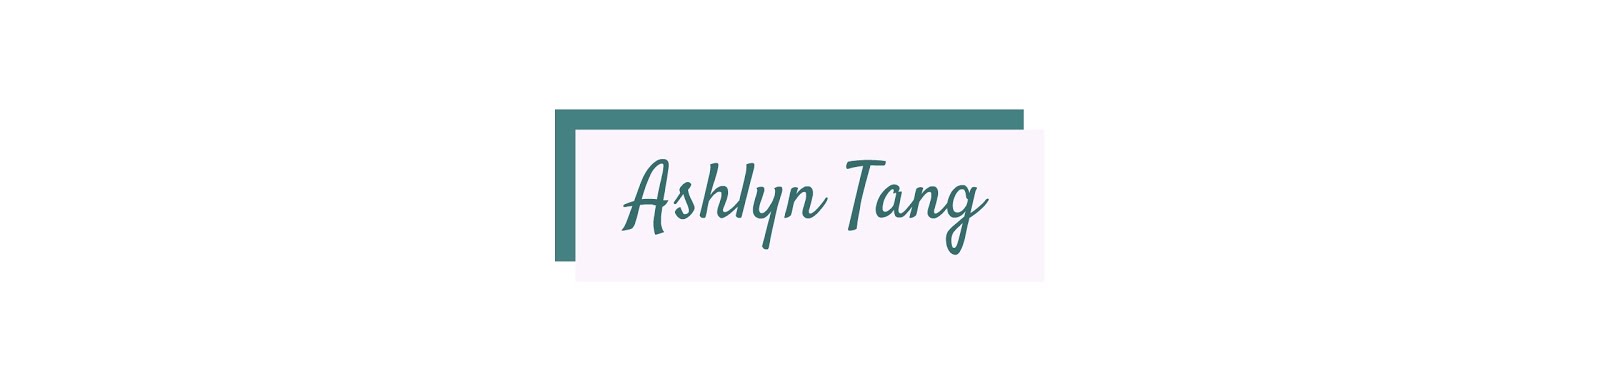 Ashlyn Tang